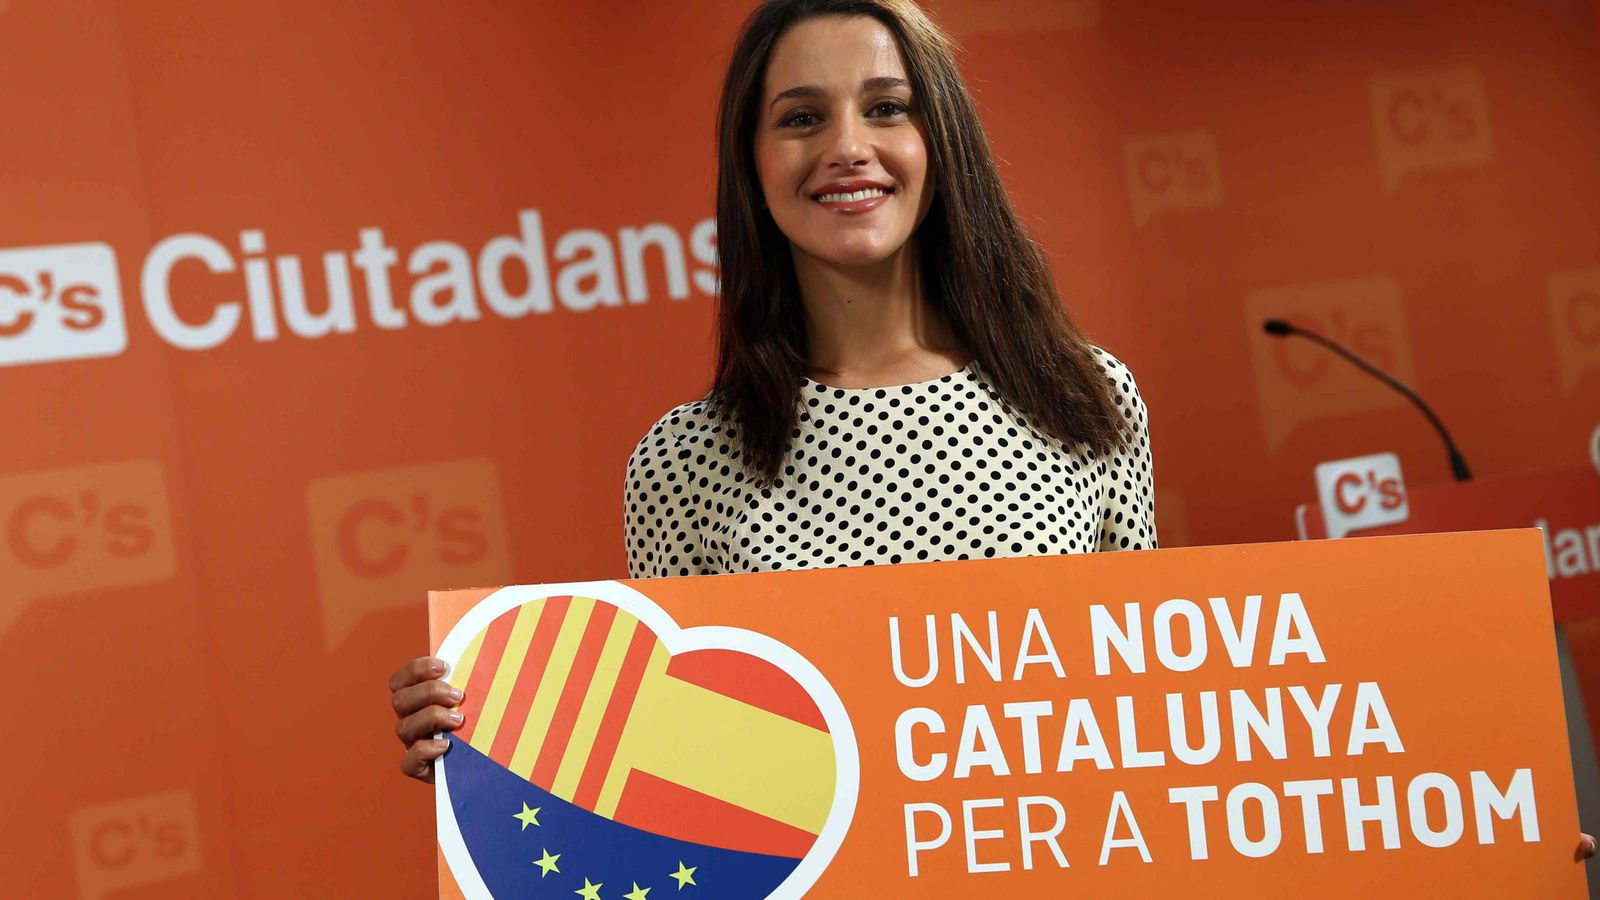 Foto:  La candidata de Ciutadans a la presidencia de la Generalitat, Inés Arrimadas. (EFE)